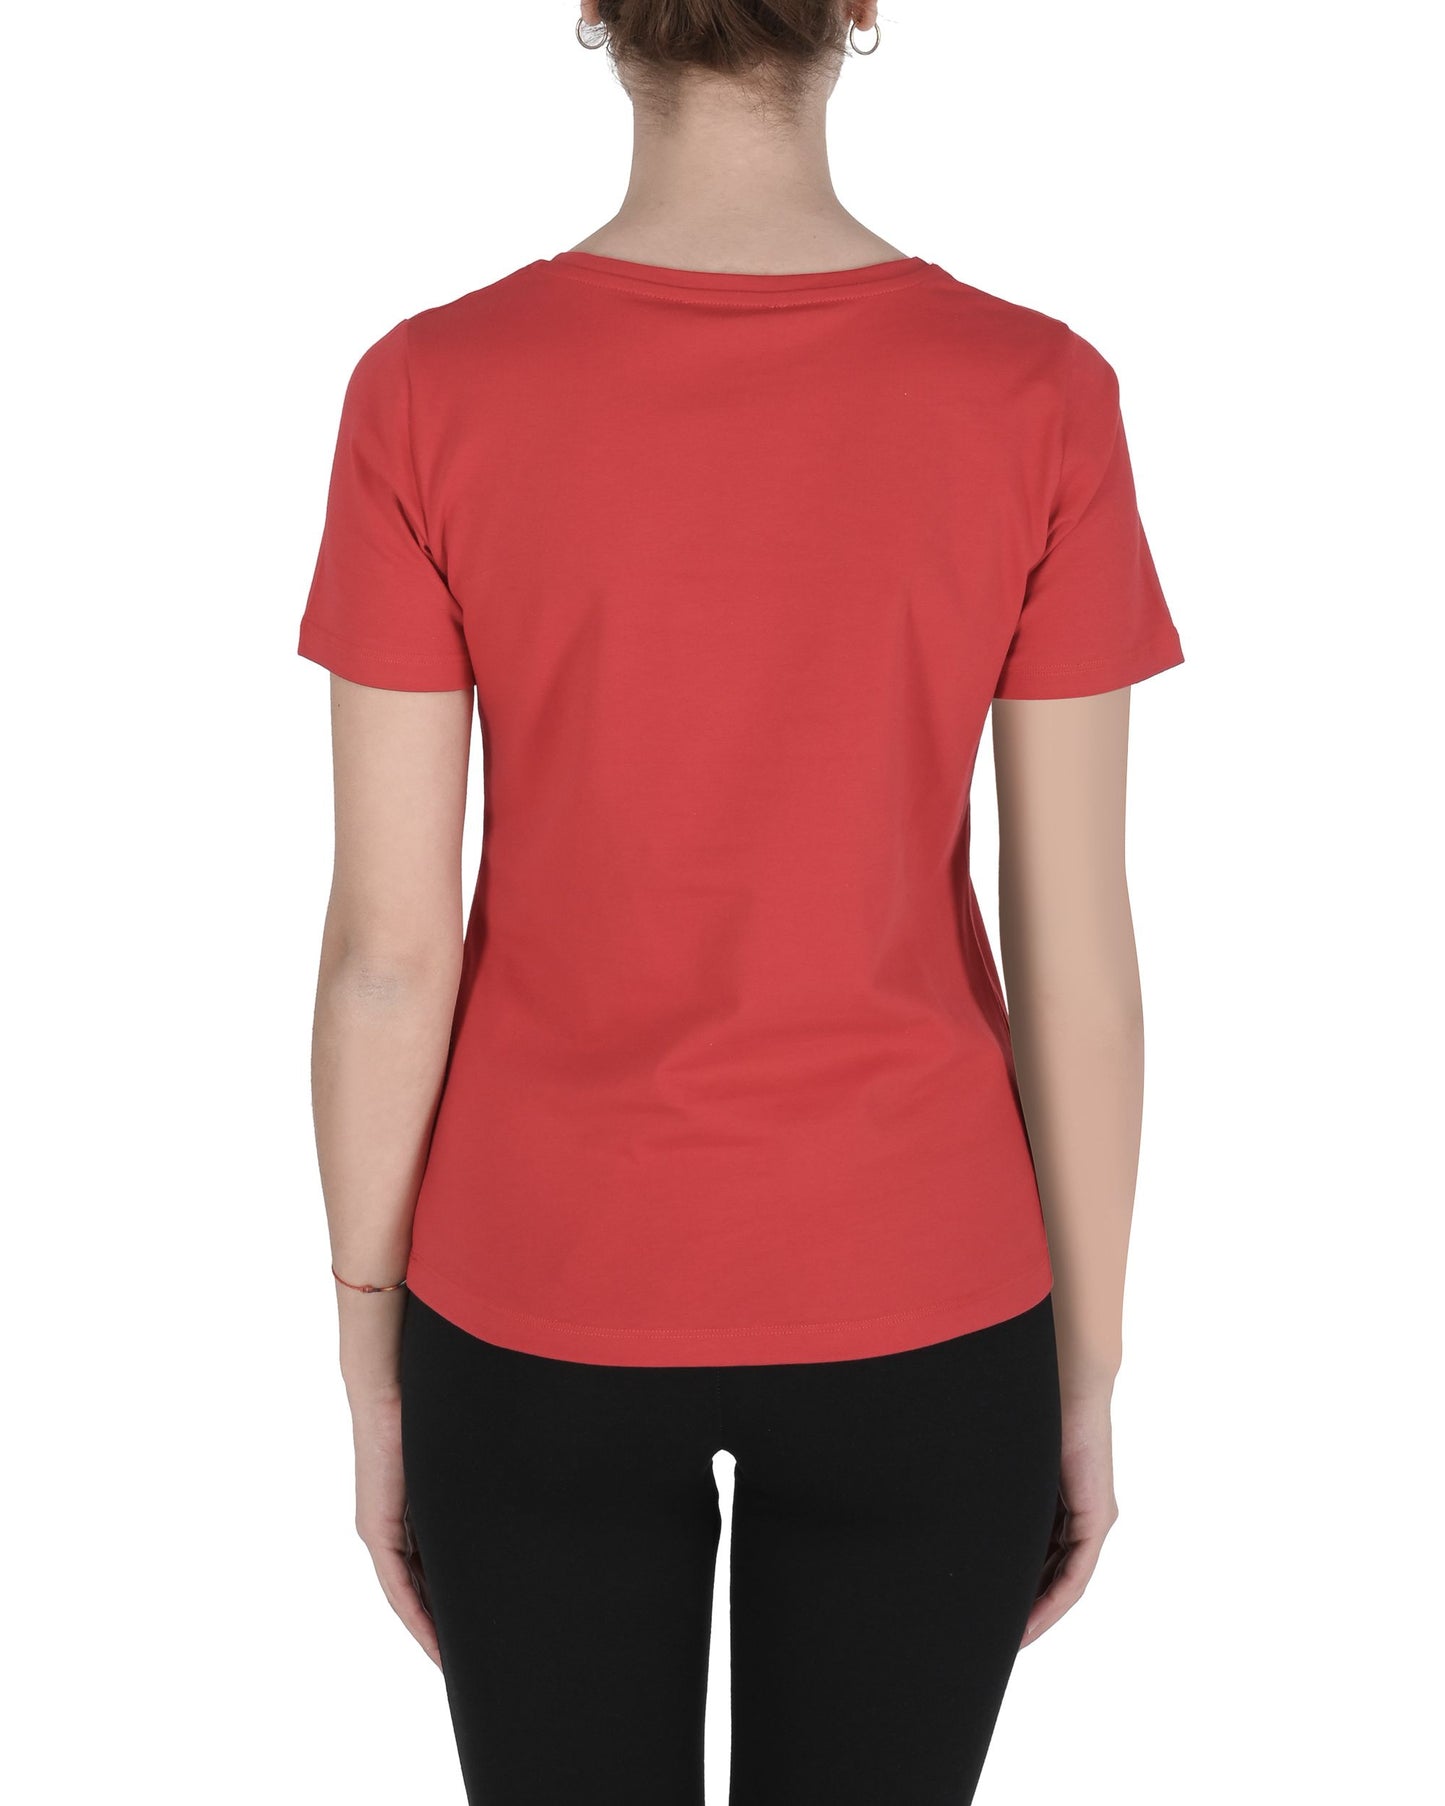 19V69 Italia Womens T-Shirt ALESSANDRA RED